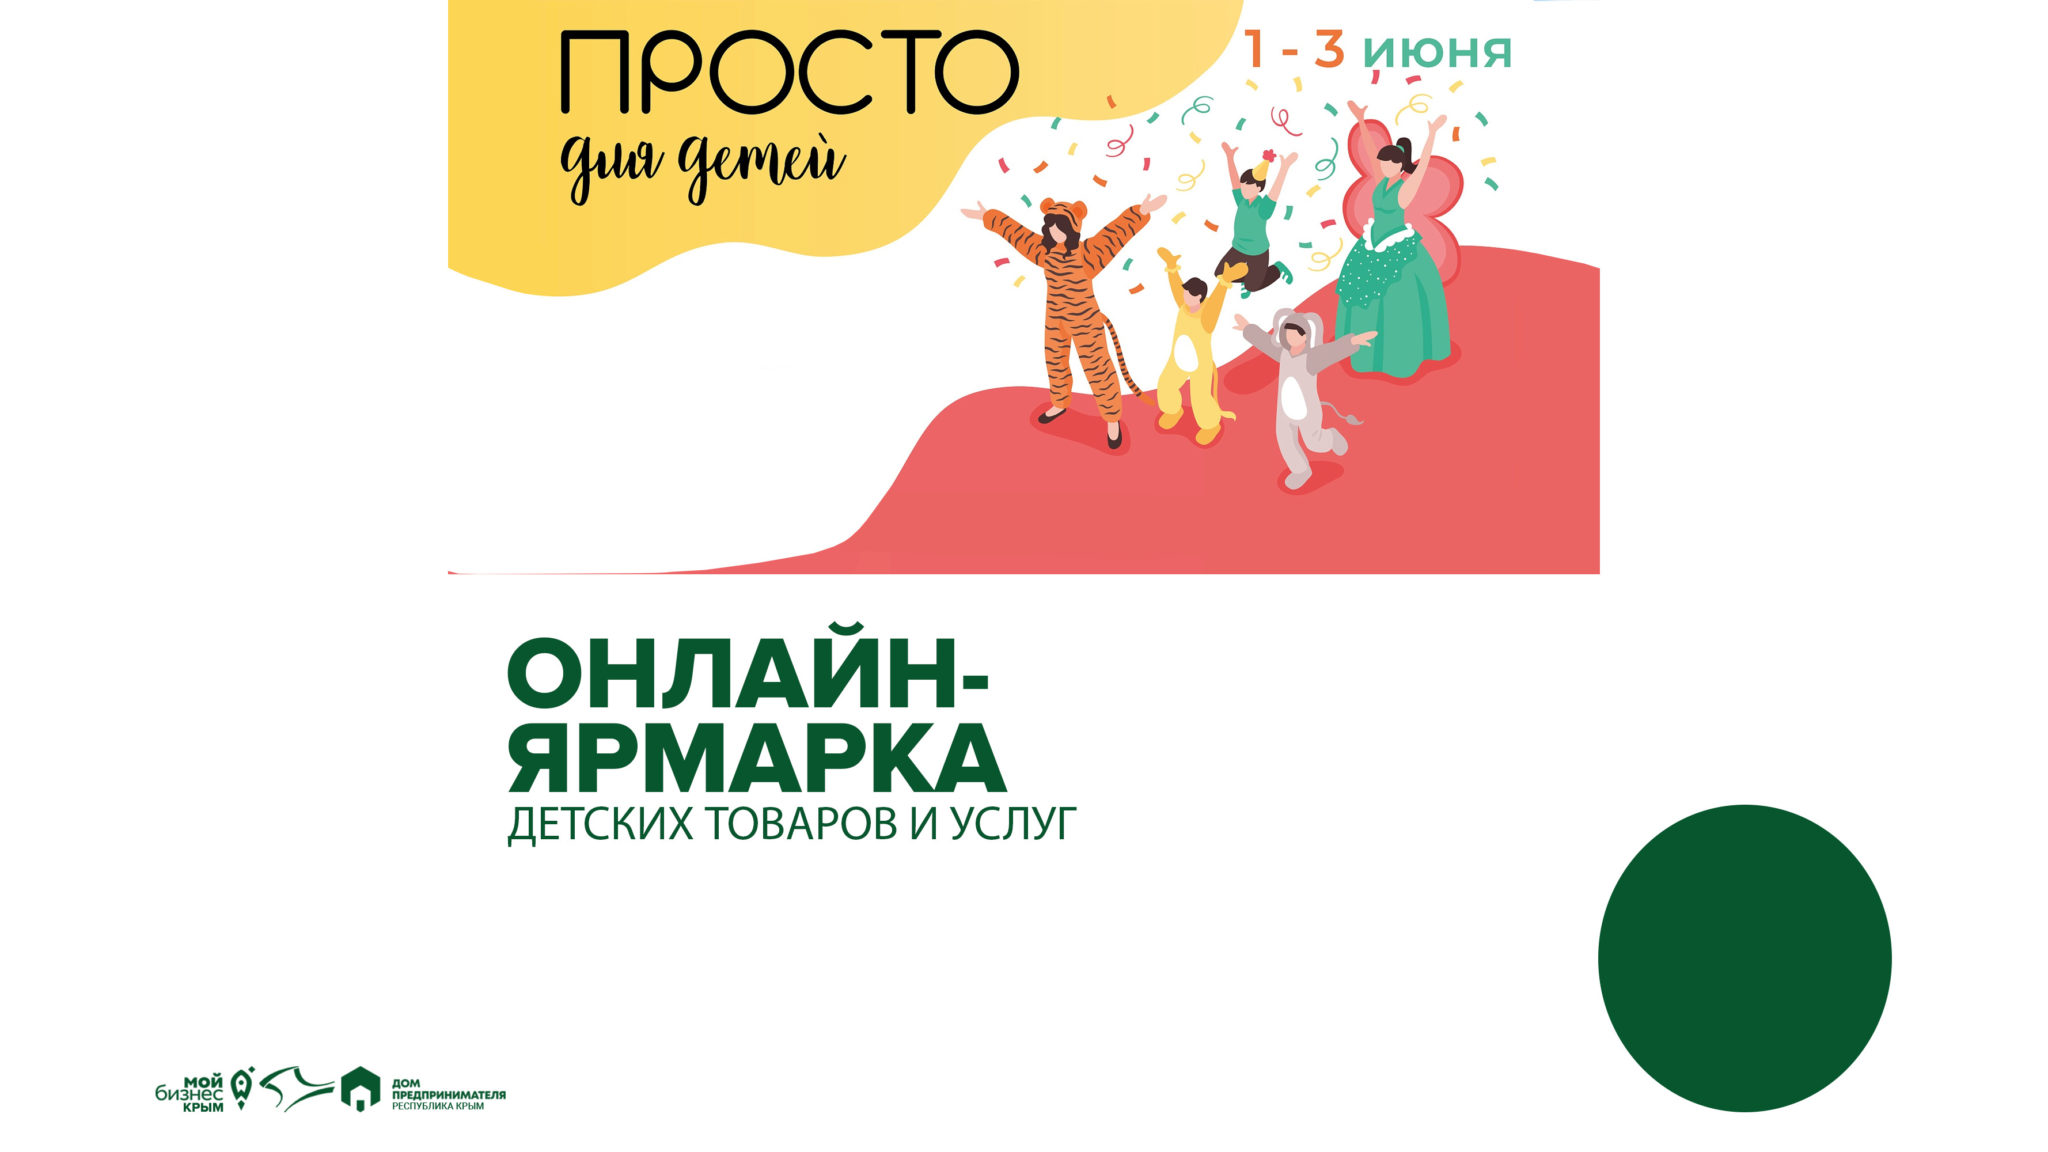 Первая онлайн-ярмарка детских товаров и услуг пройдет в Крыму с 1 по 3 июня